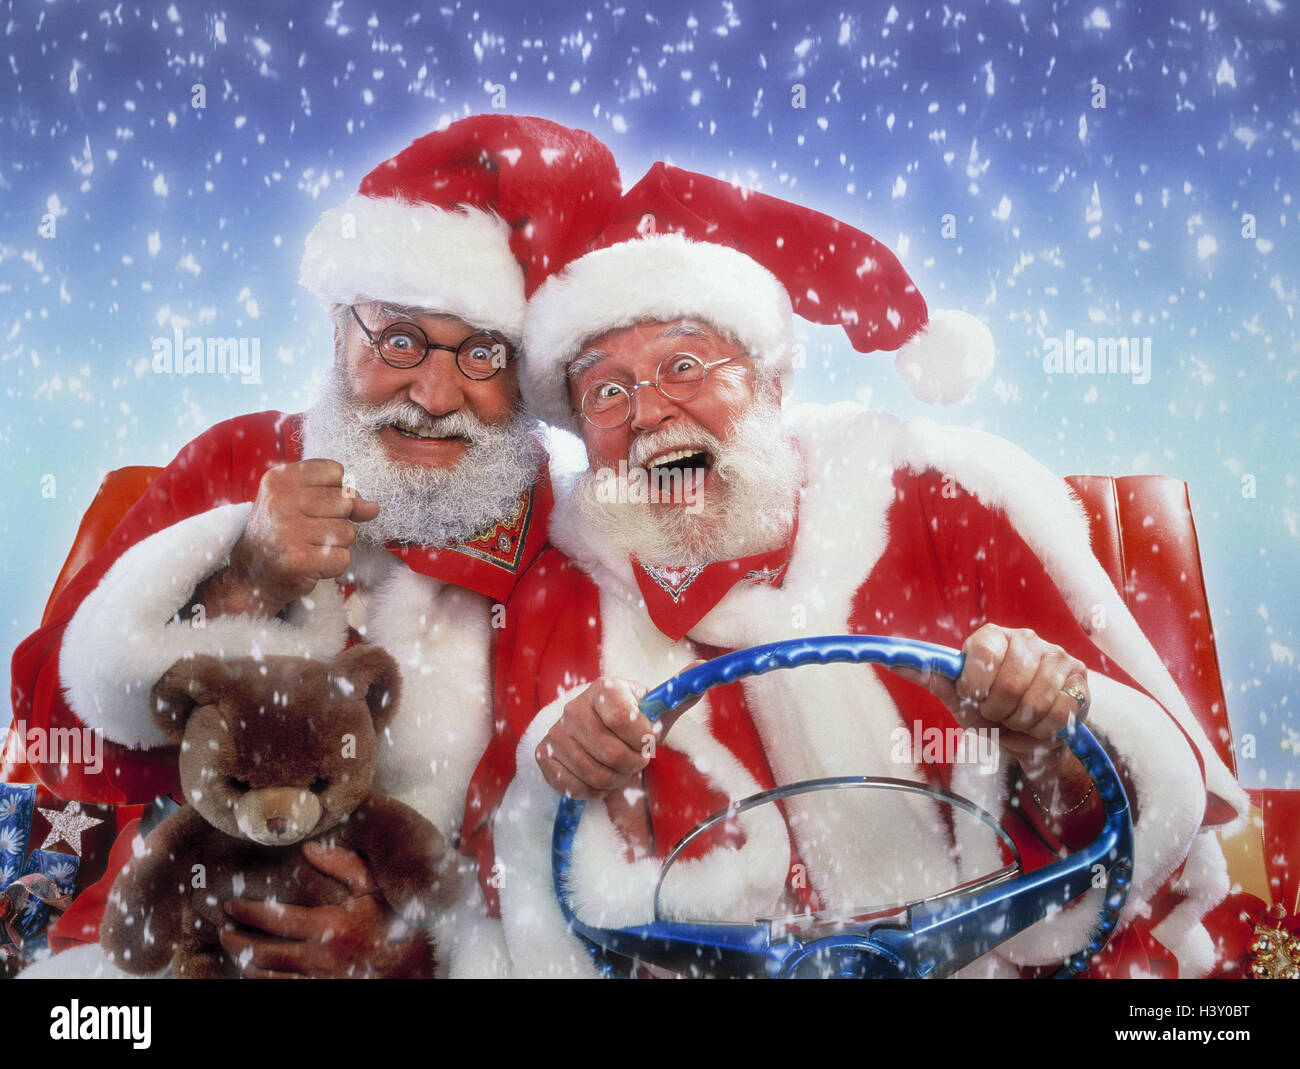 Weihnachtsmänner, Geschenke, Motorsport, Cabrio, Geste, Freude, Schnee, Weihnachten, Weihnachtsmann, zwei Pakete, Auto, Teddybär, Studio, Transport, Werbung, fahren, glücklich, lustig Stockfoto